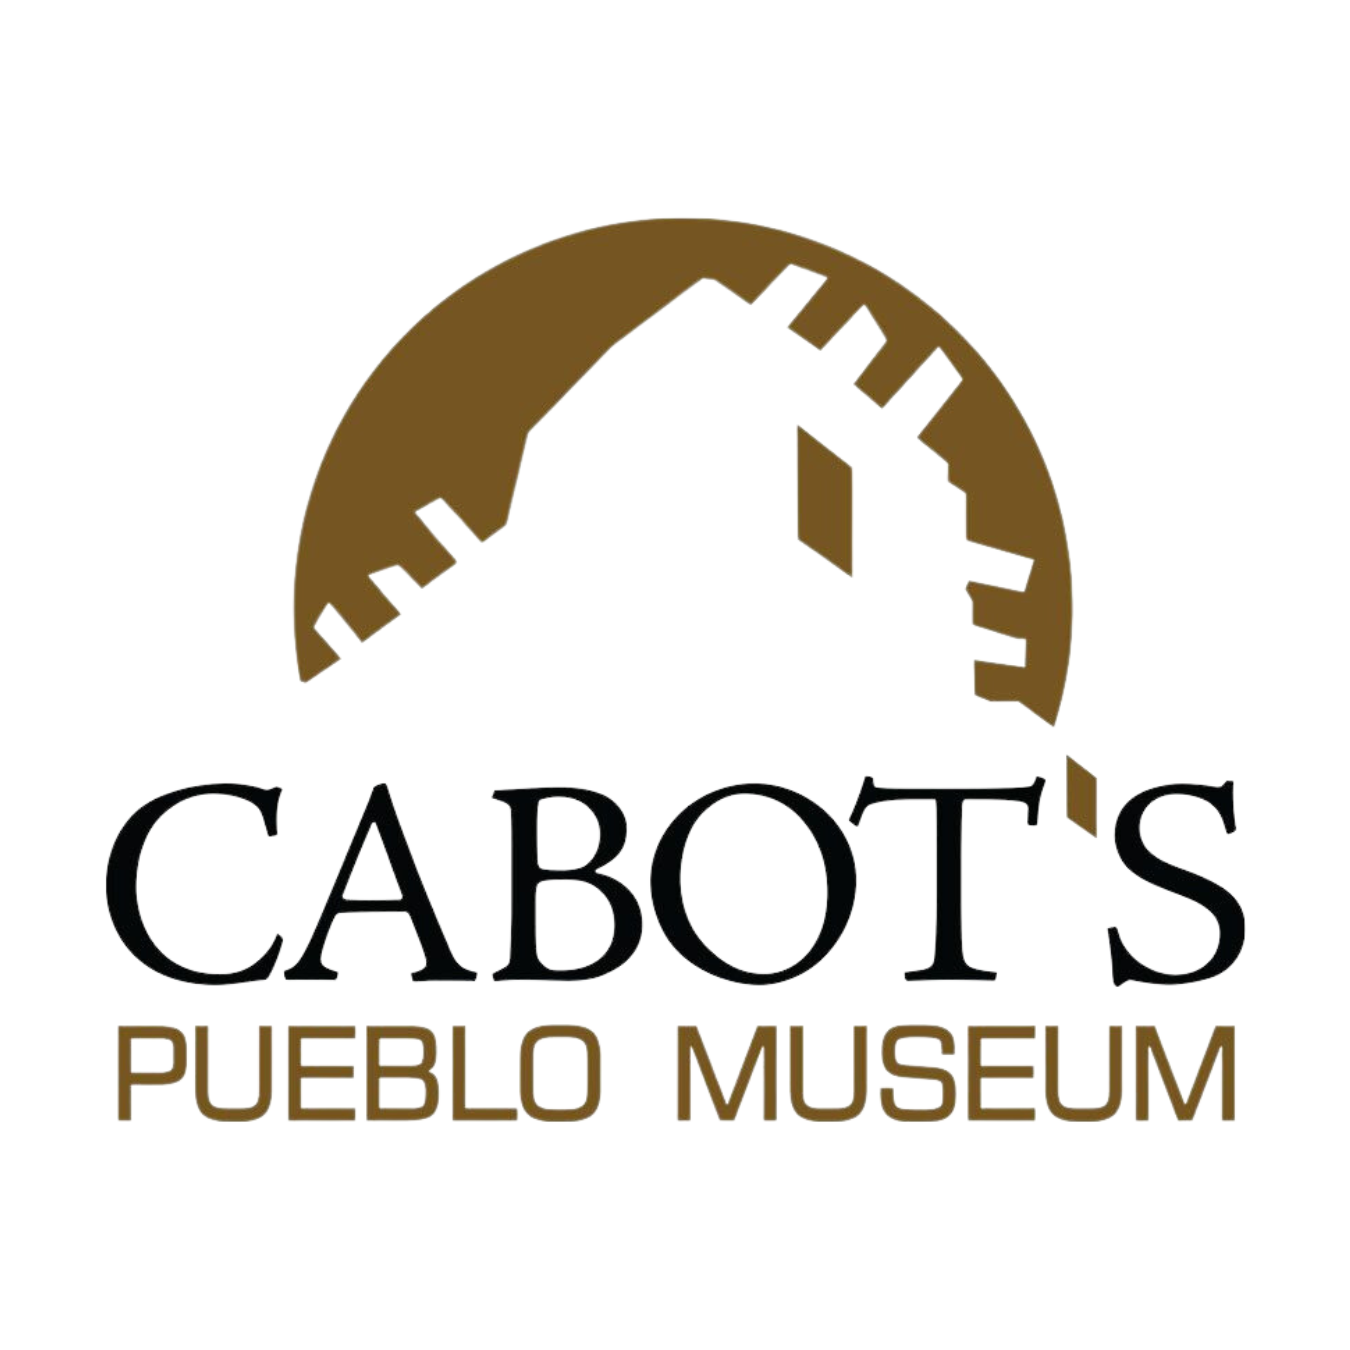 Cabot’s Pueblo Museum Logo